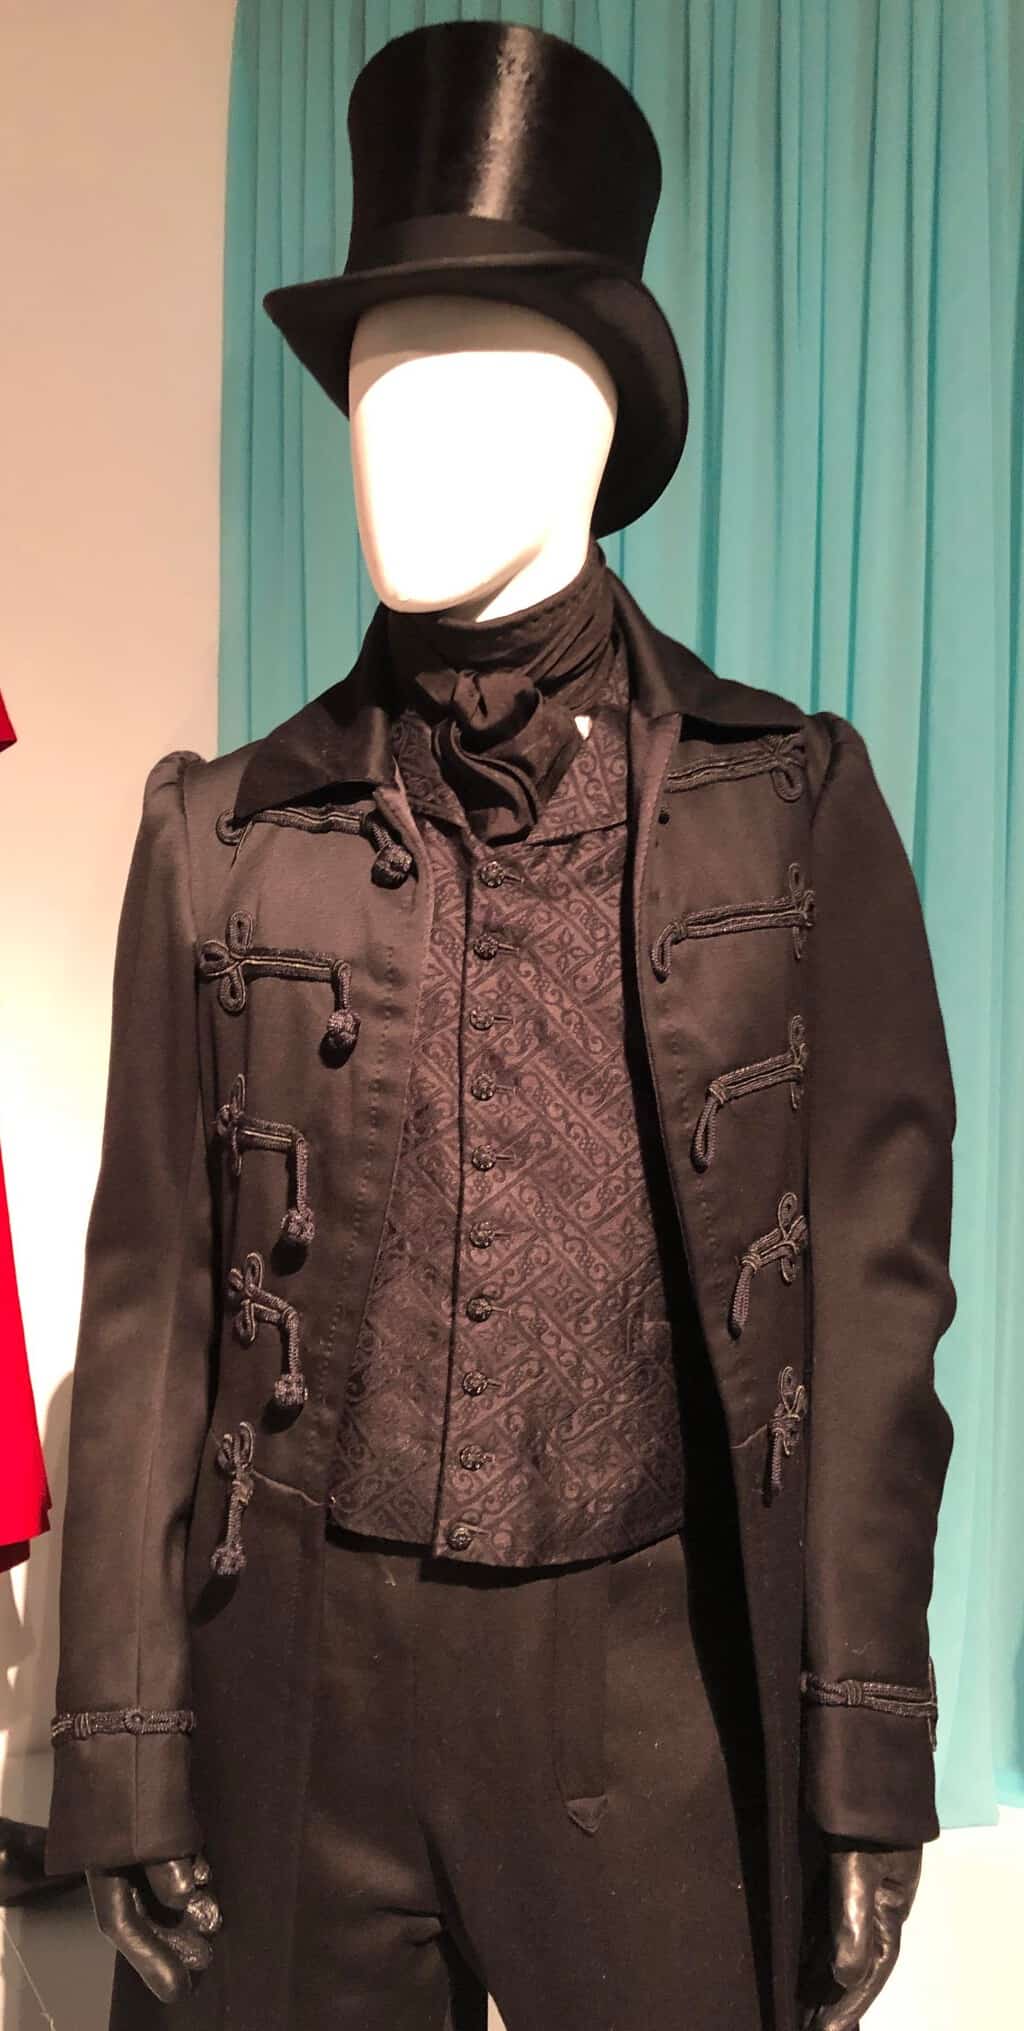 Vanity Fair costumes, FIDM exhibit 2019